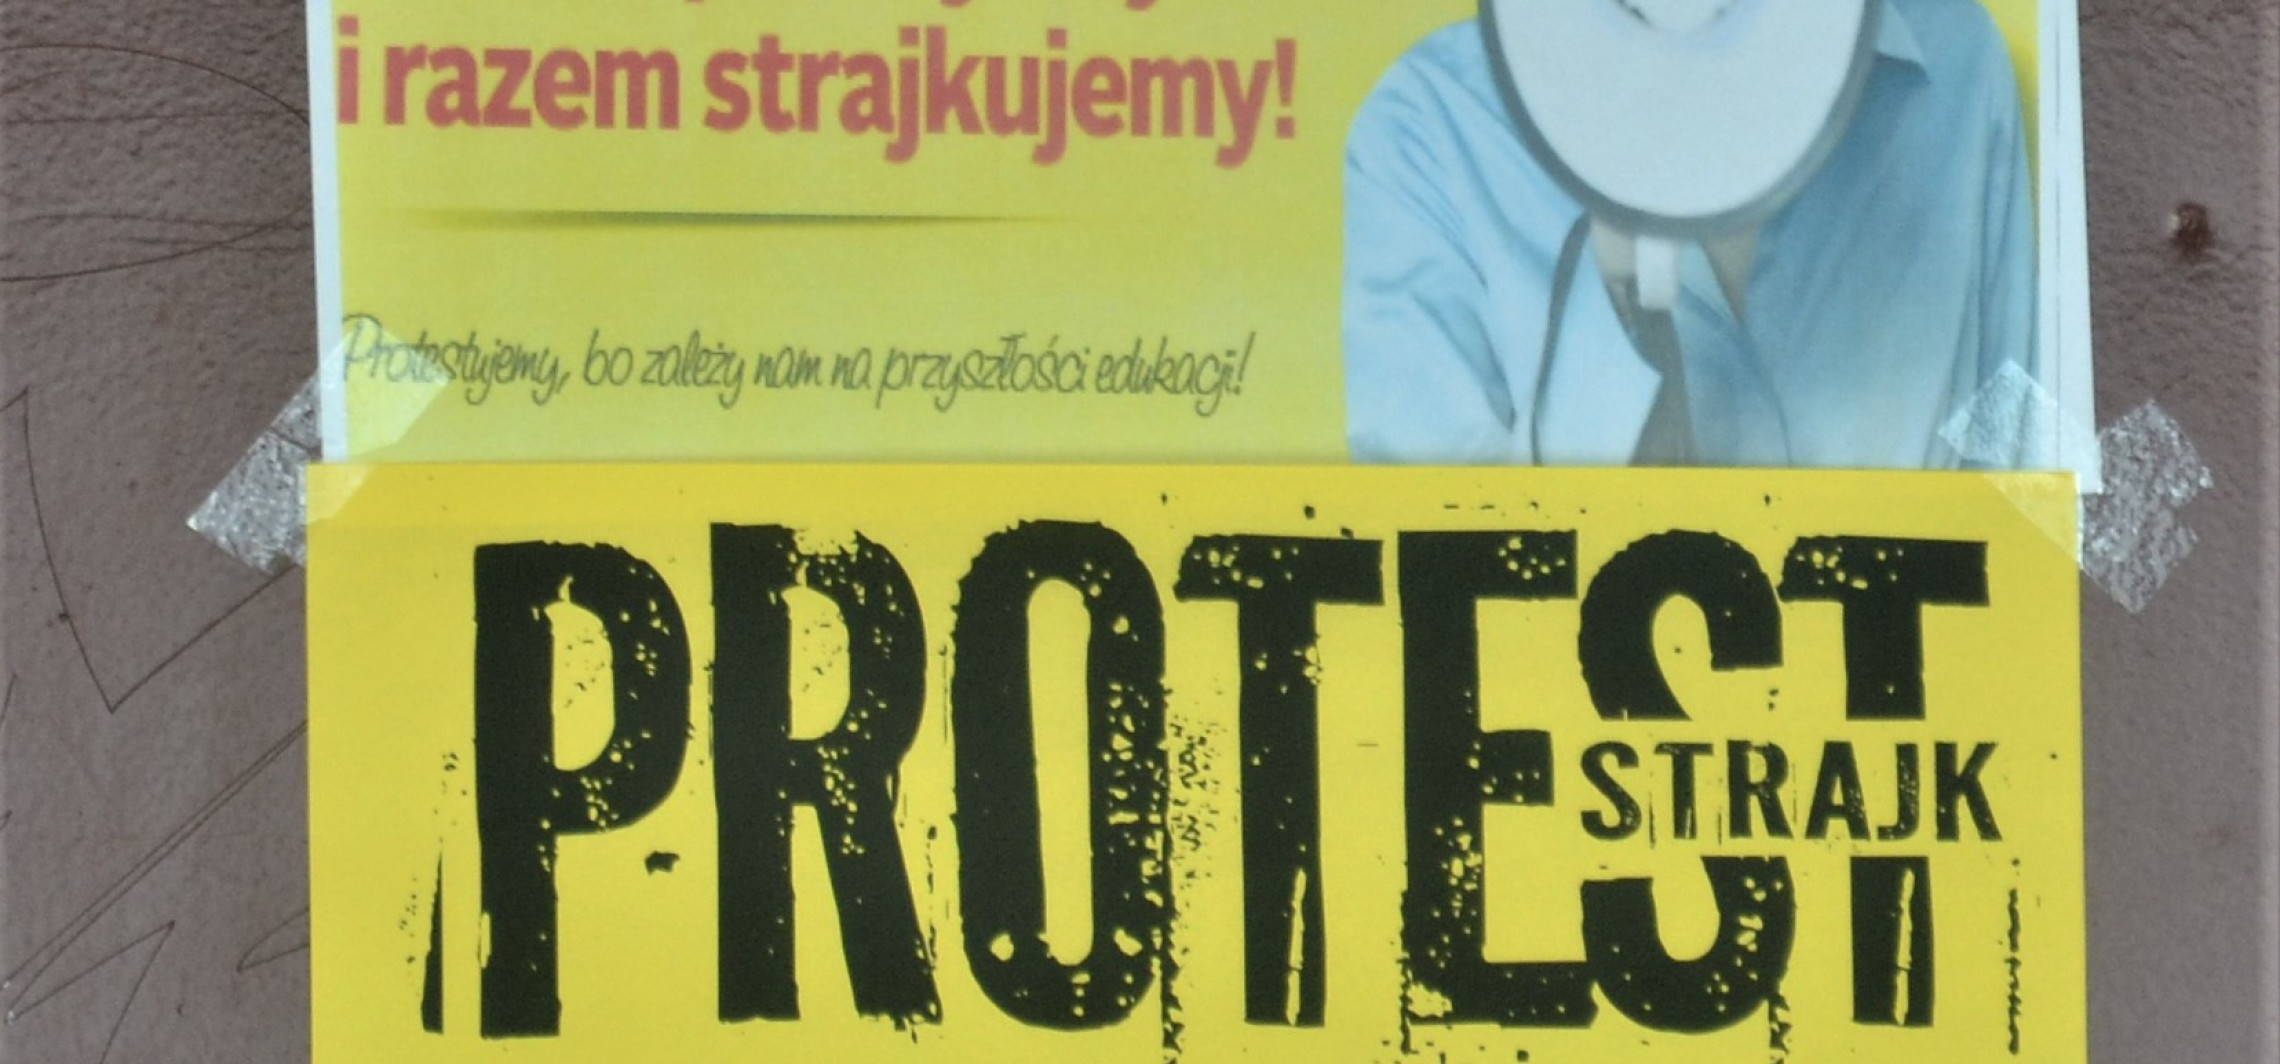 Strajk nauczycieli - kampania wrześniowa